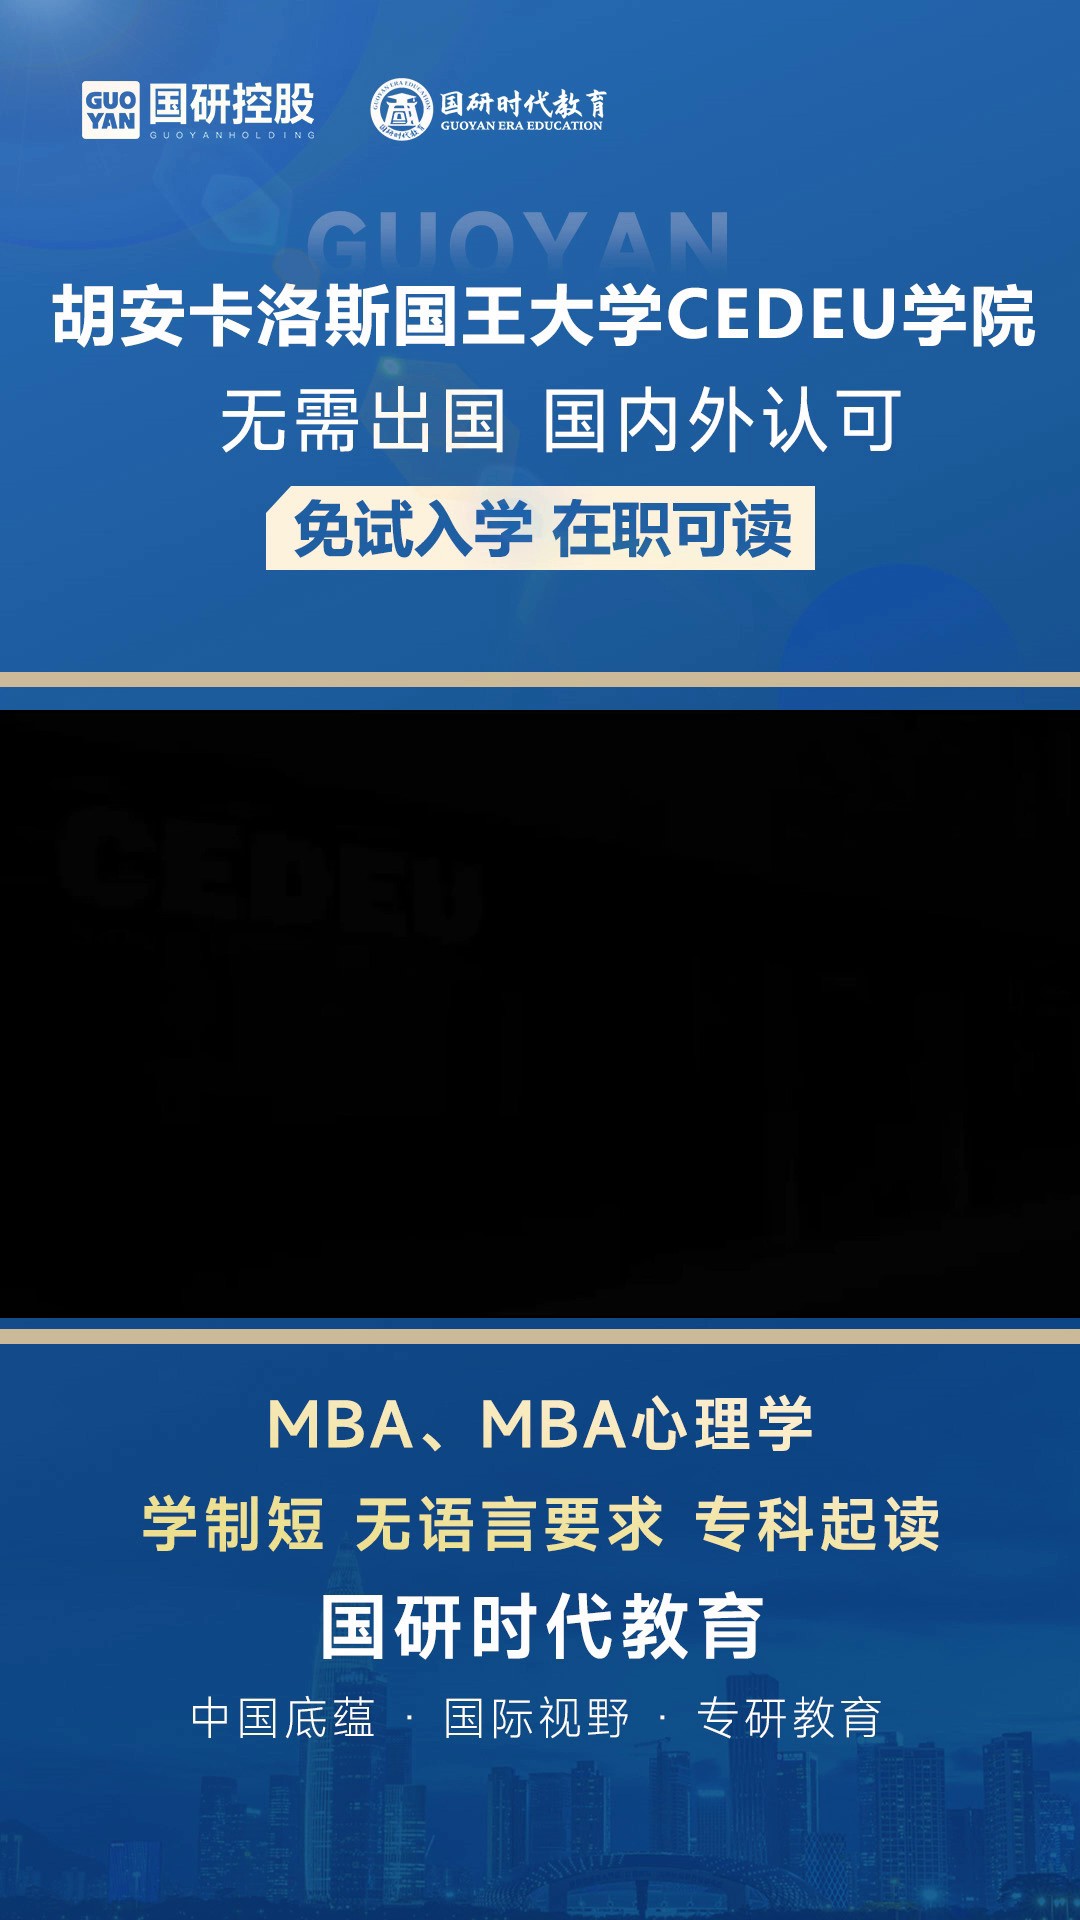 上海市在职MBA报名,MBA